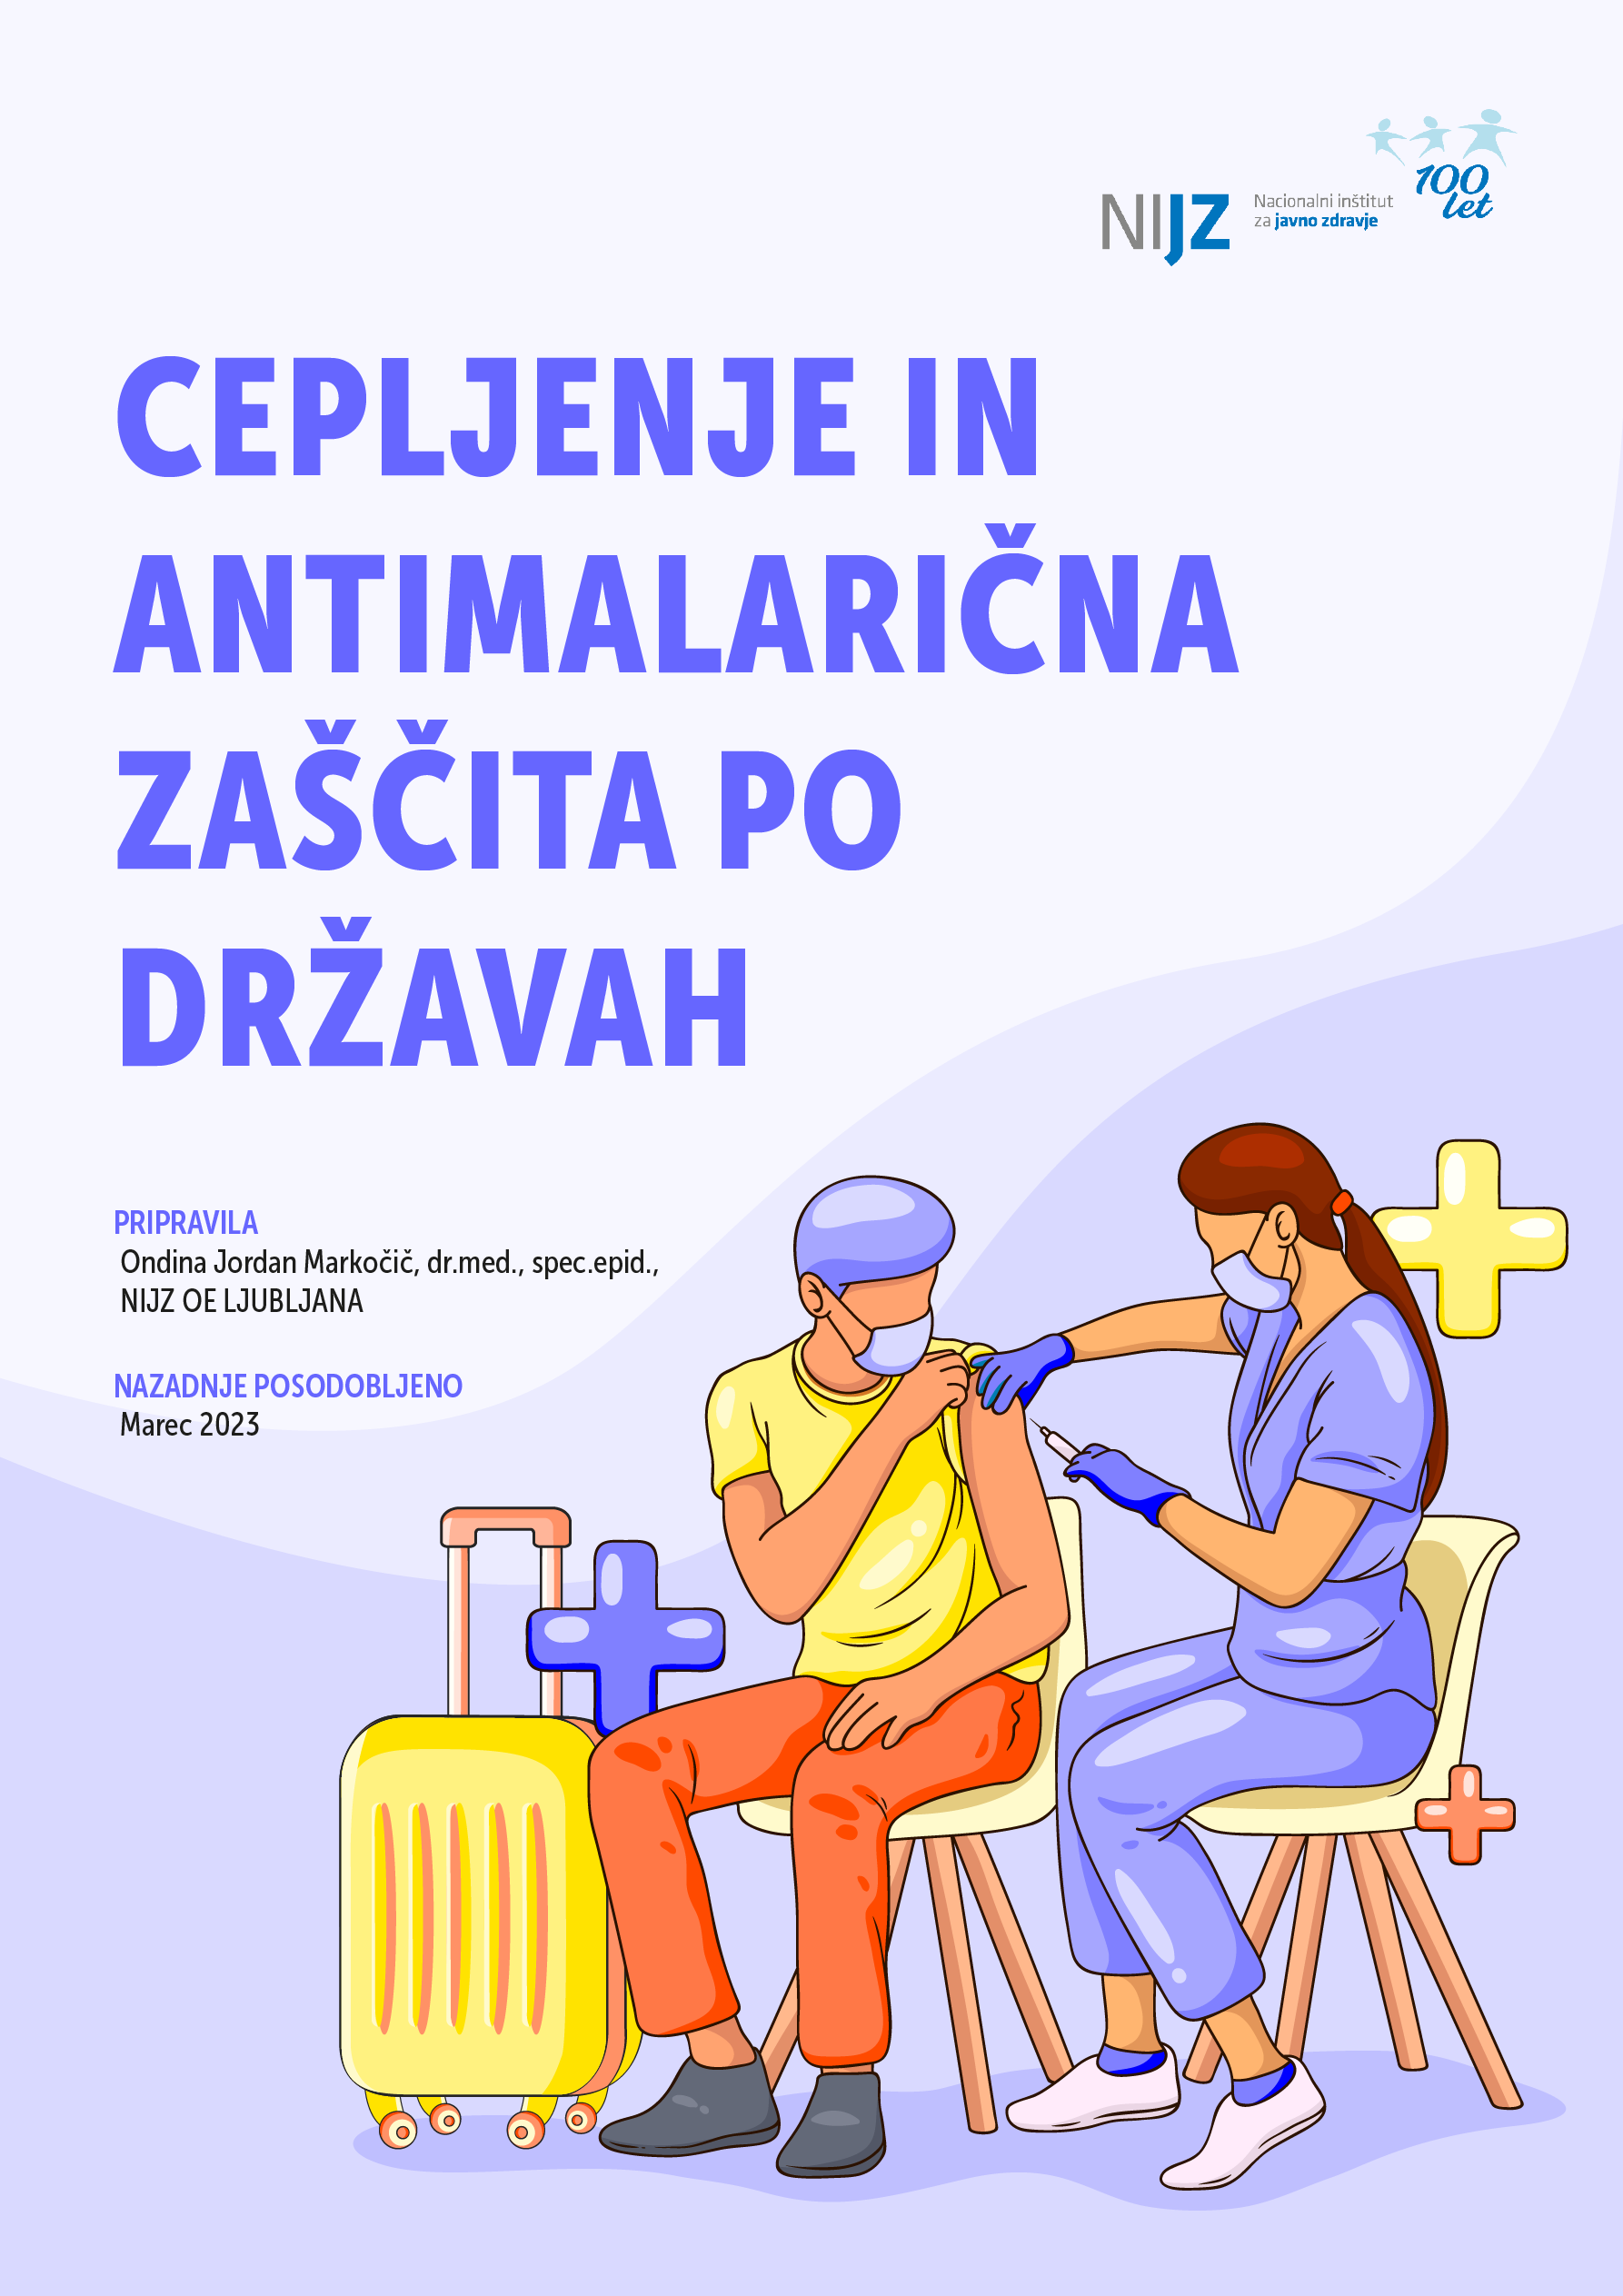 Cepljenje in antimalarična zaščita po državah